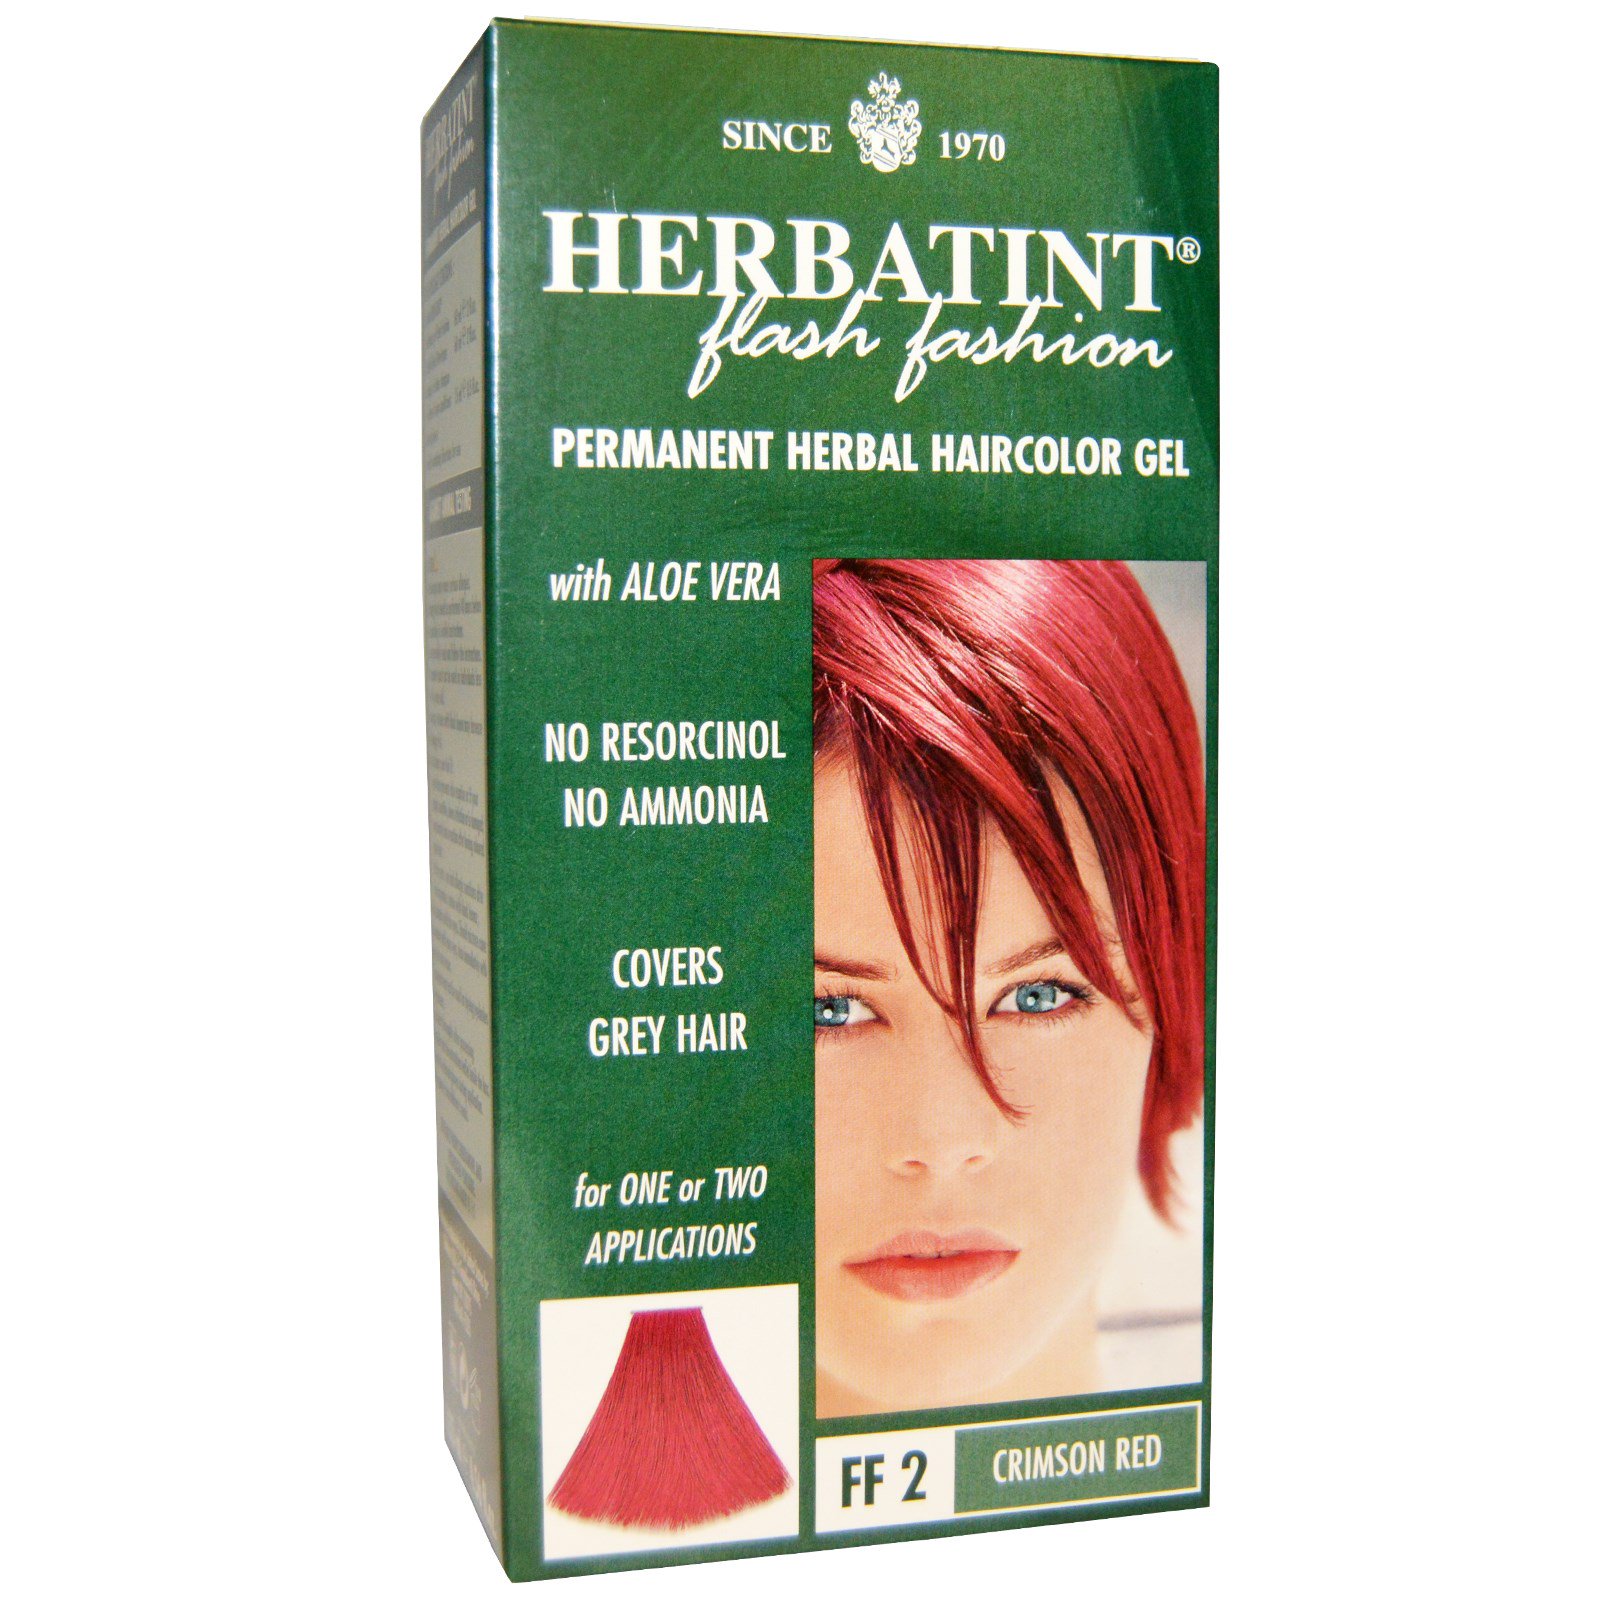 Herbatint フラッシュファッション パーマネント ハーバル ヘア